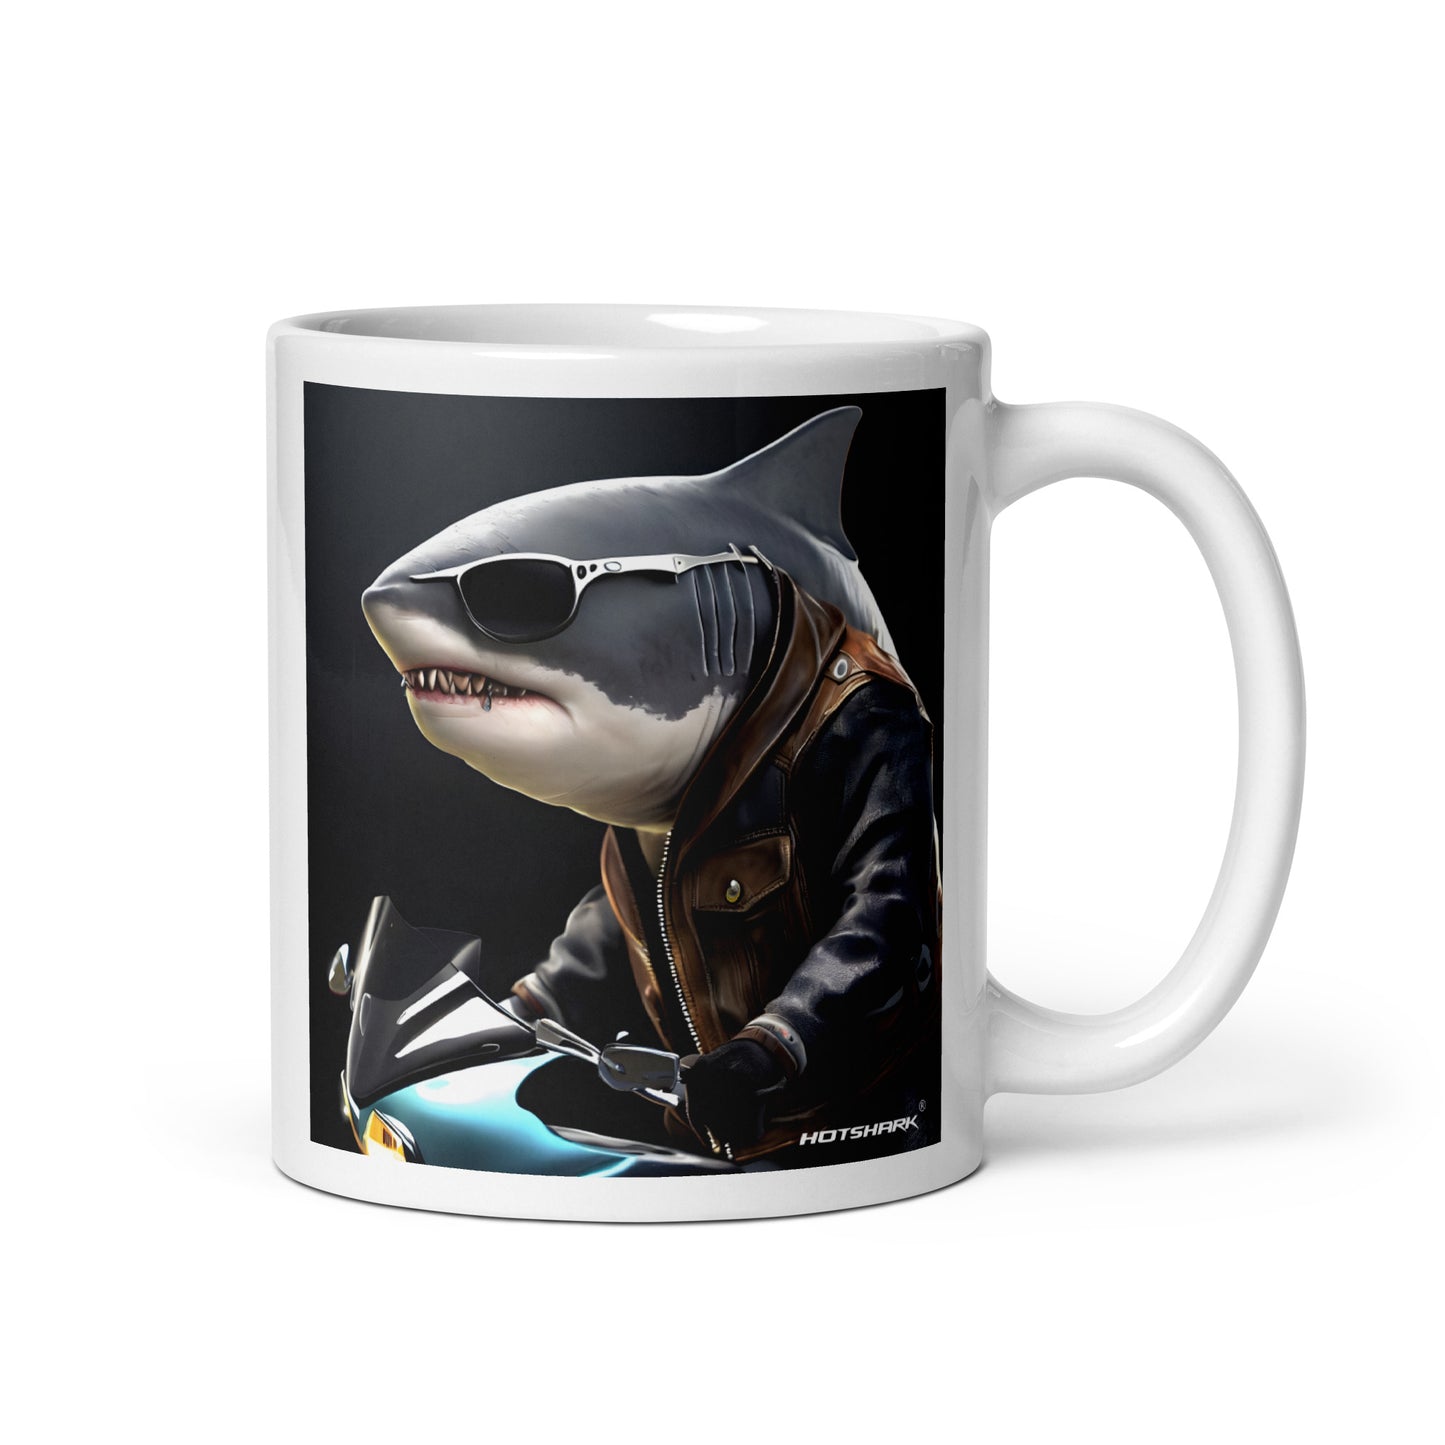 Biker6 Shark - Mug